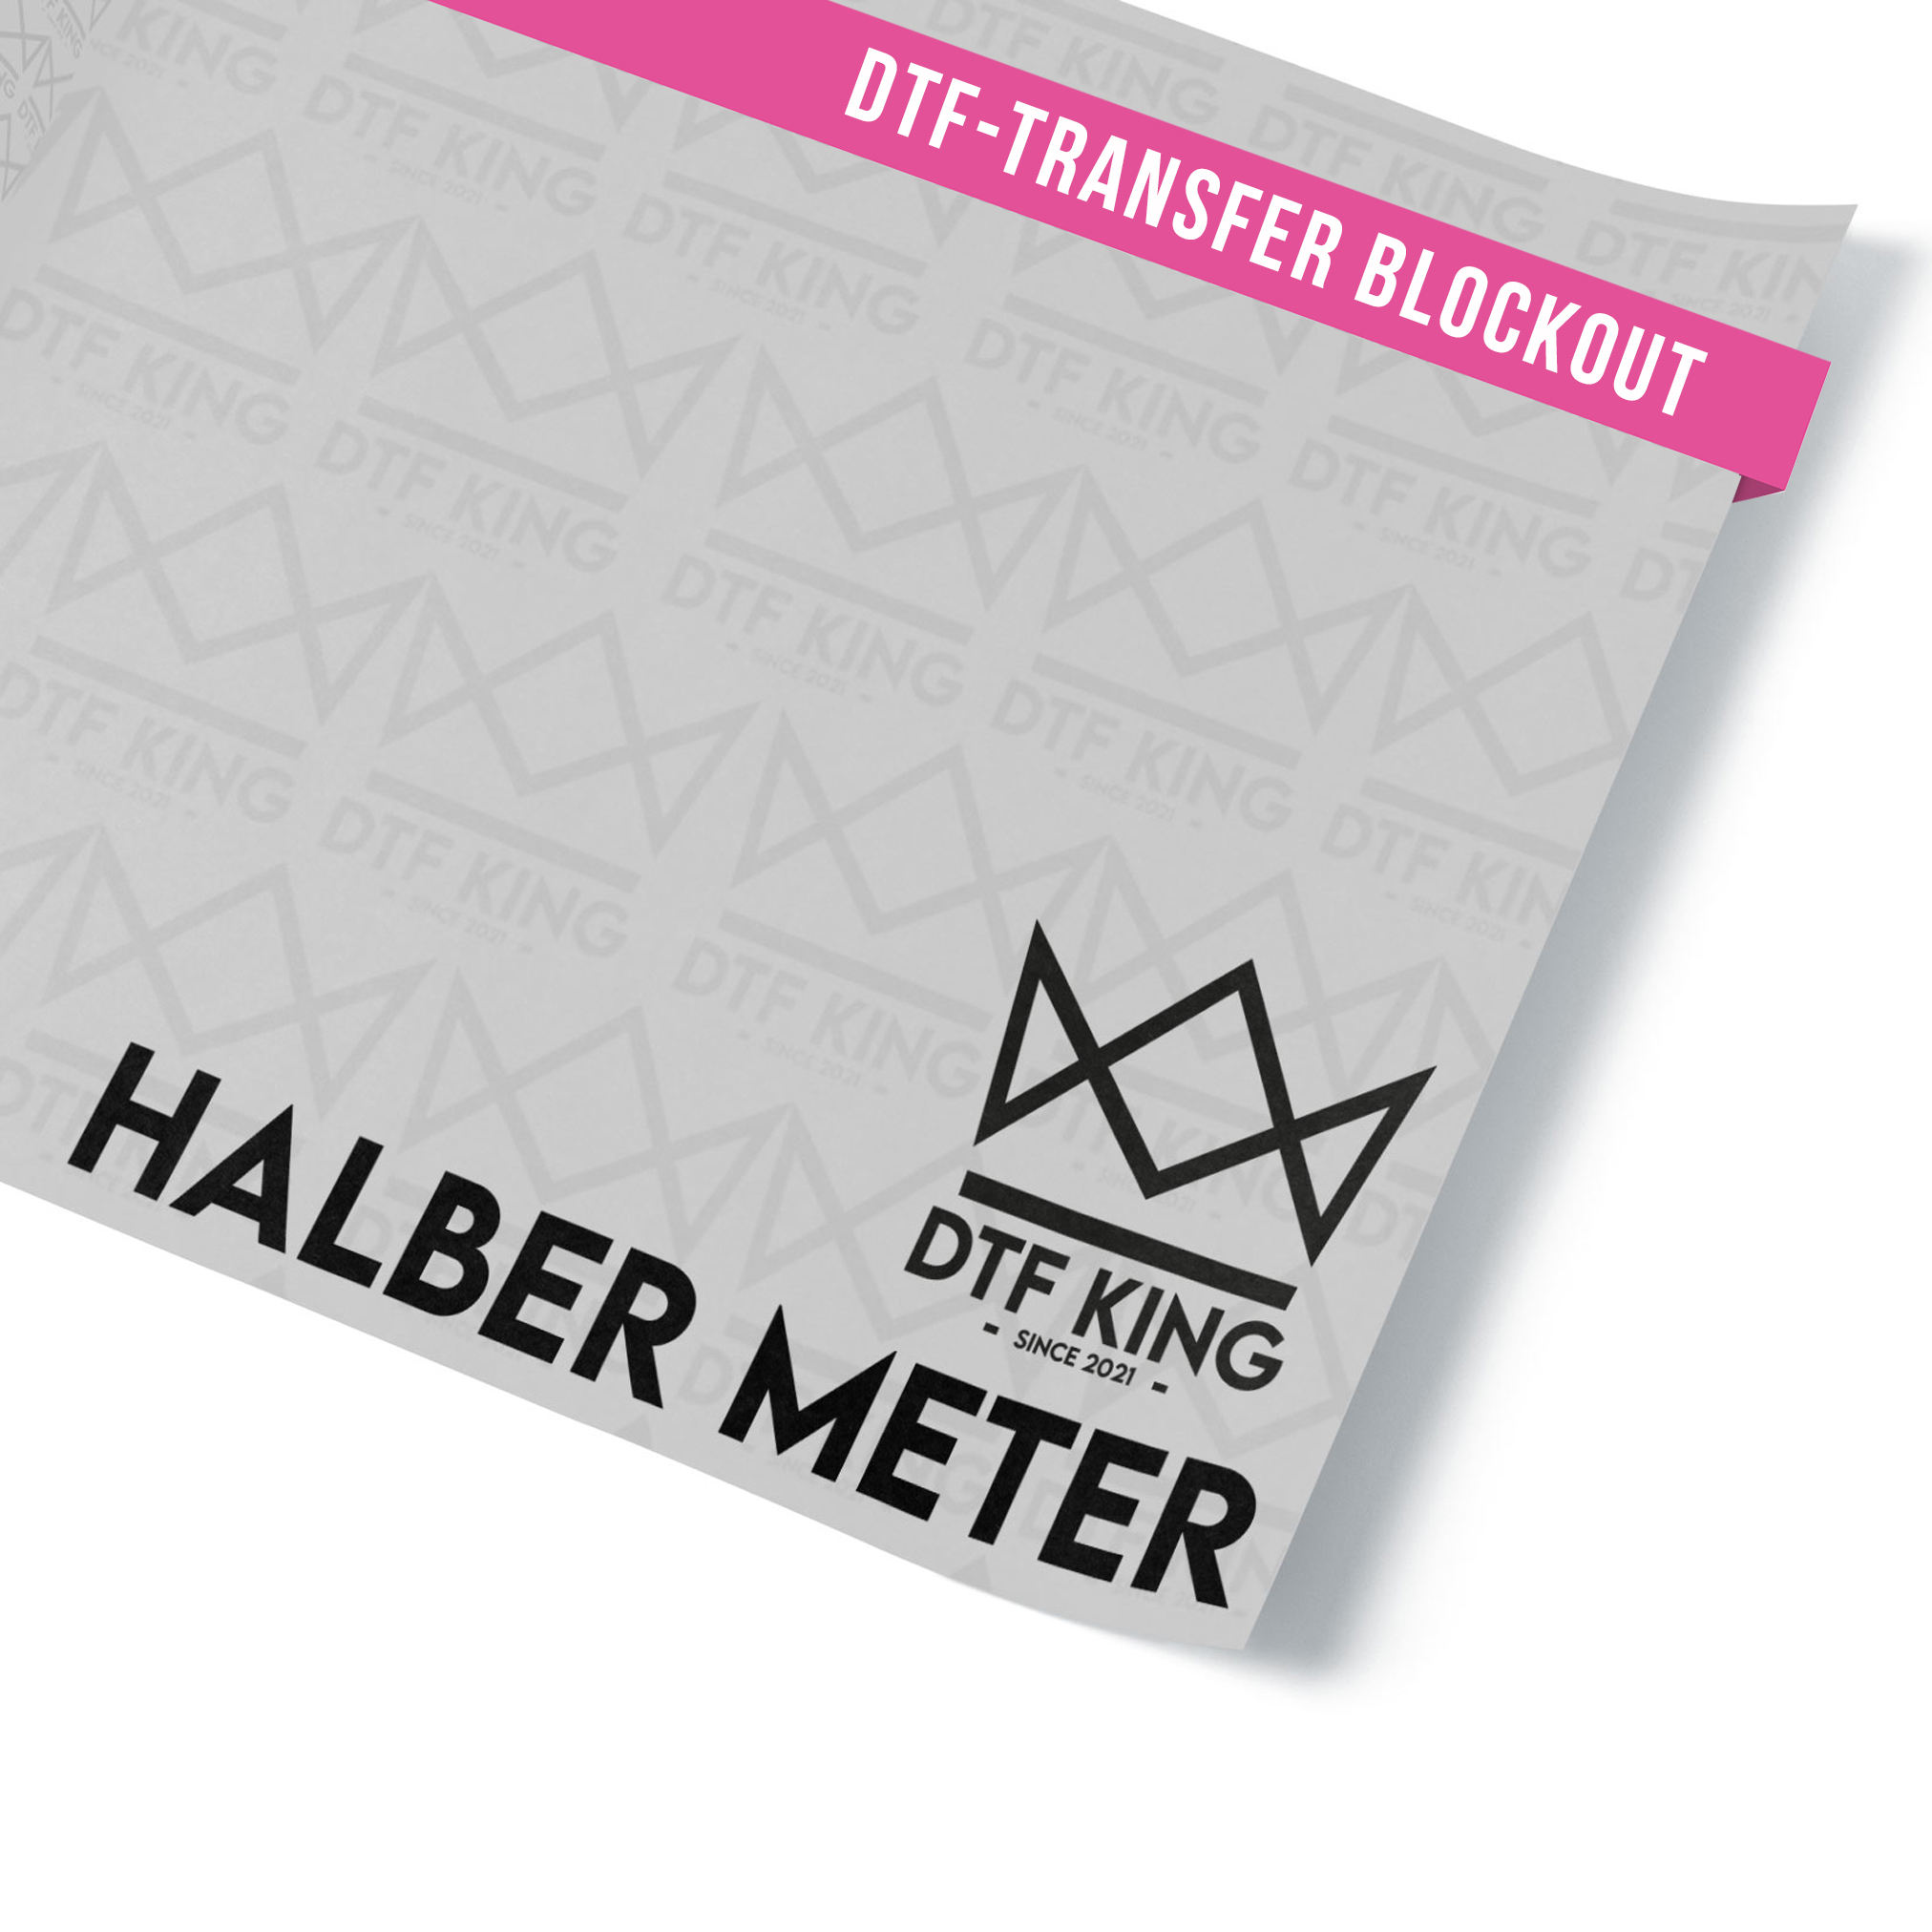 DTF-Transfer-Blockout-halber-Meter